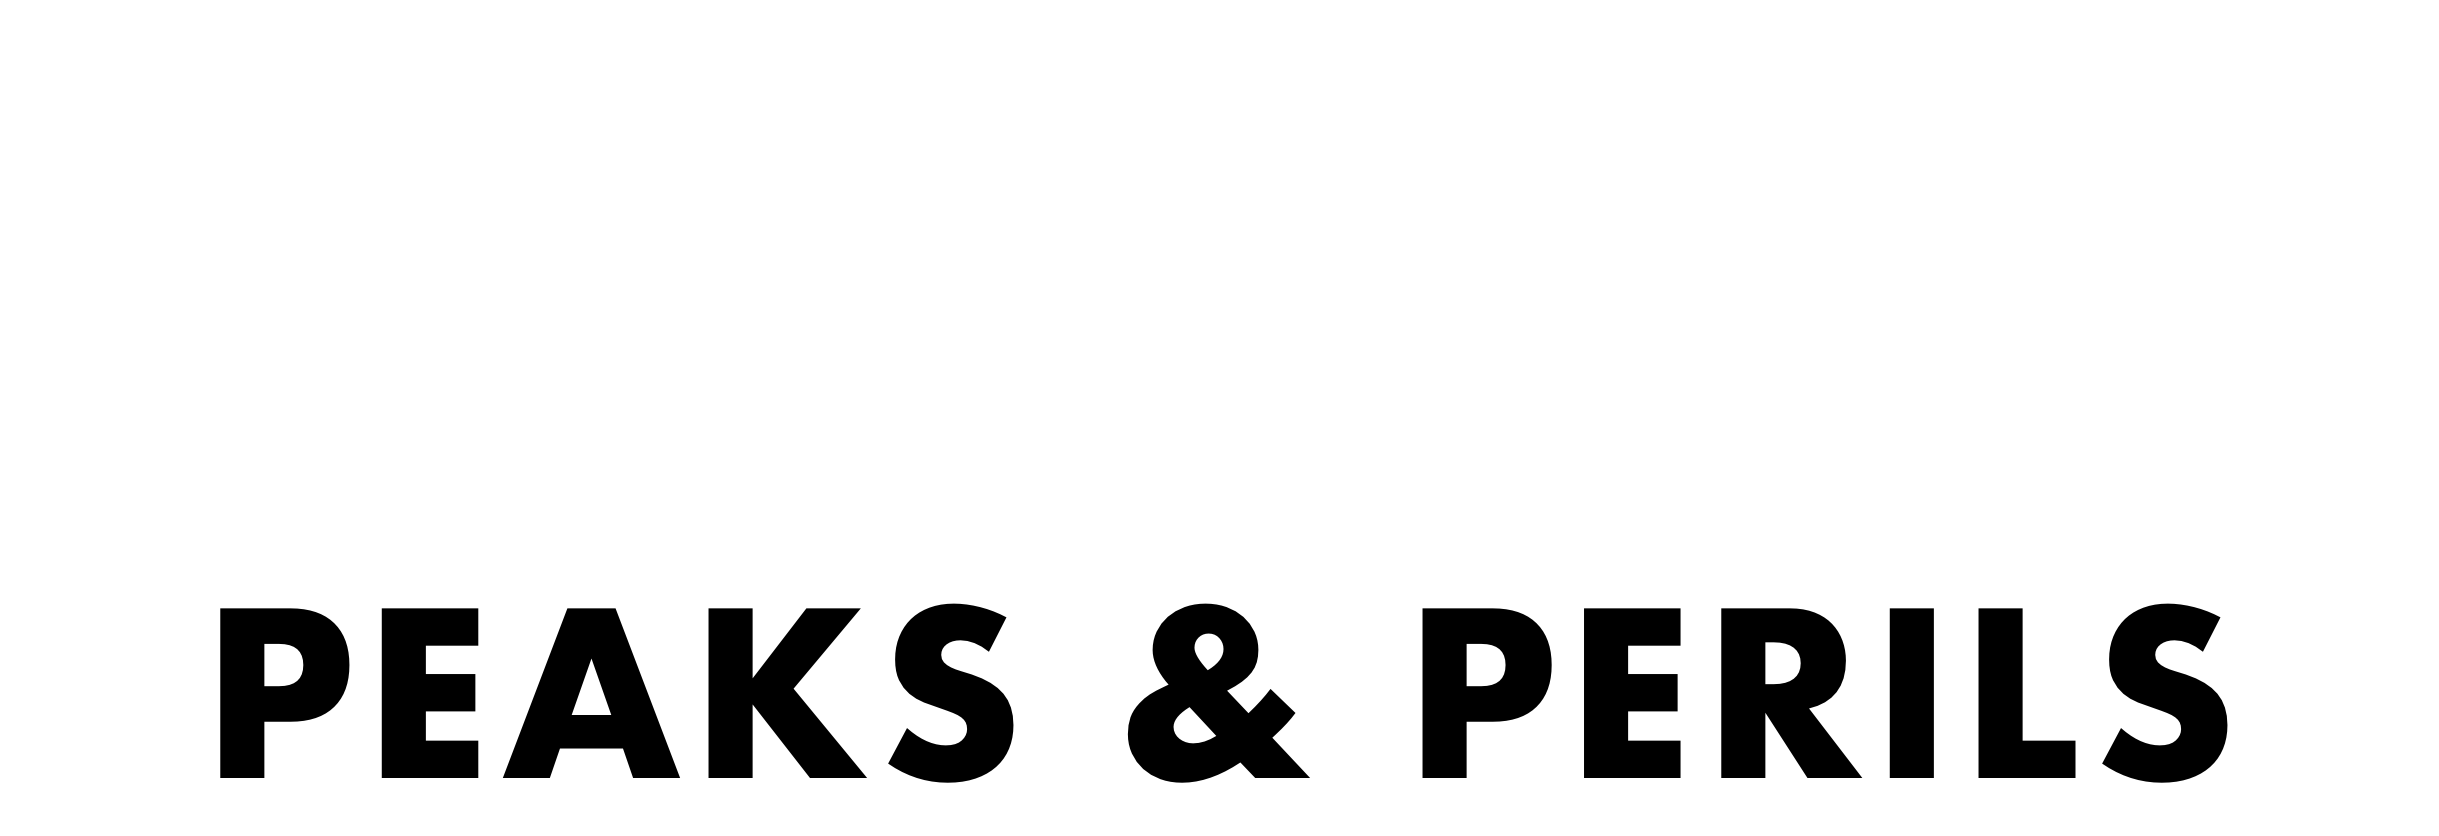 Peaks & Perils